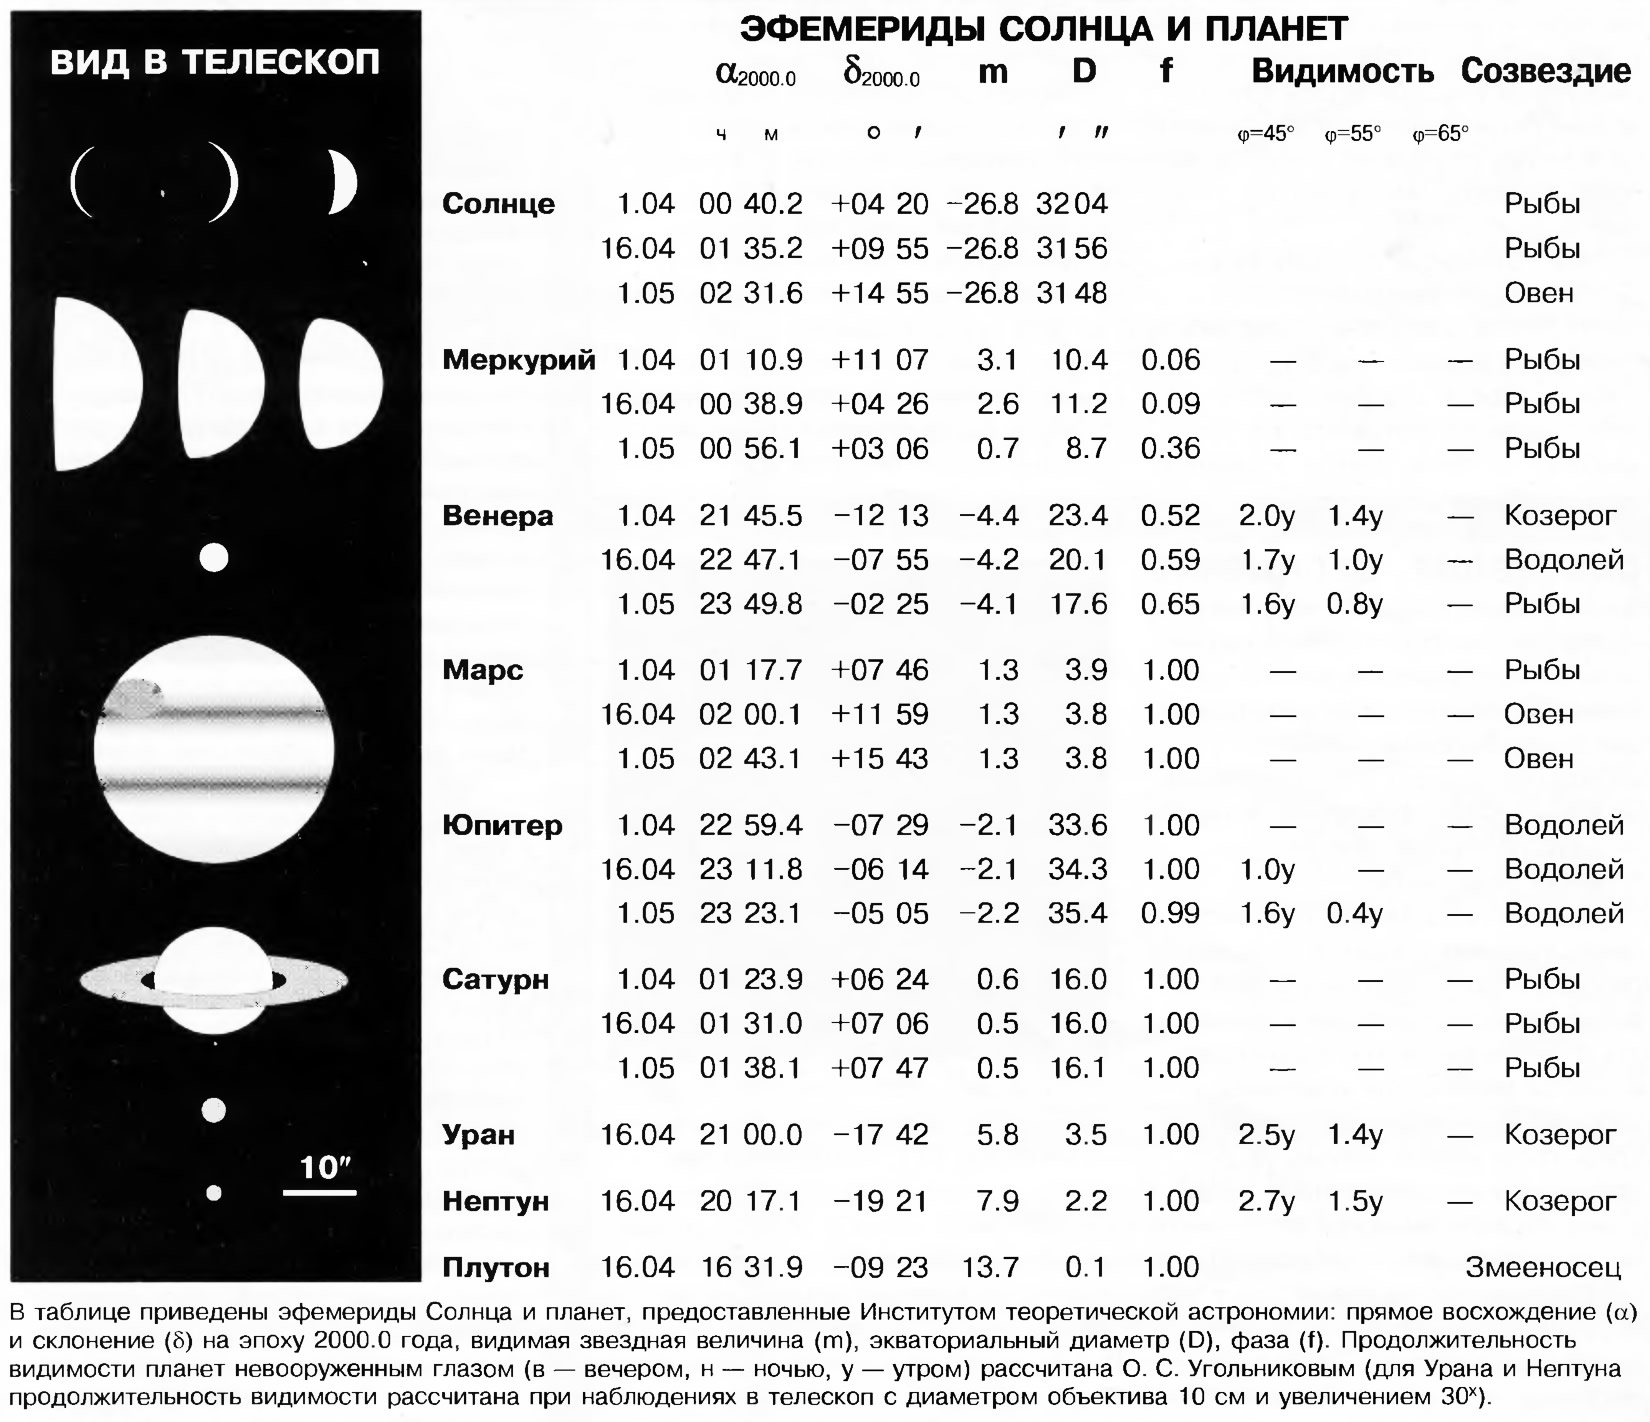 Эфемериды Солнца и планет Апрель 1998